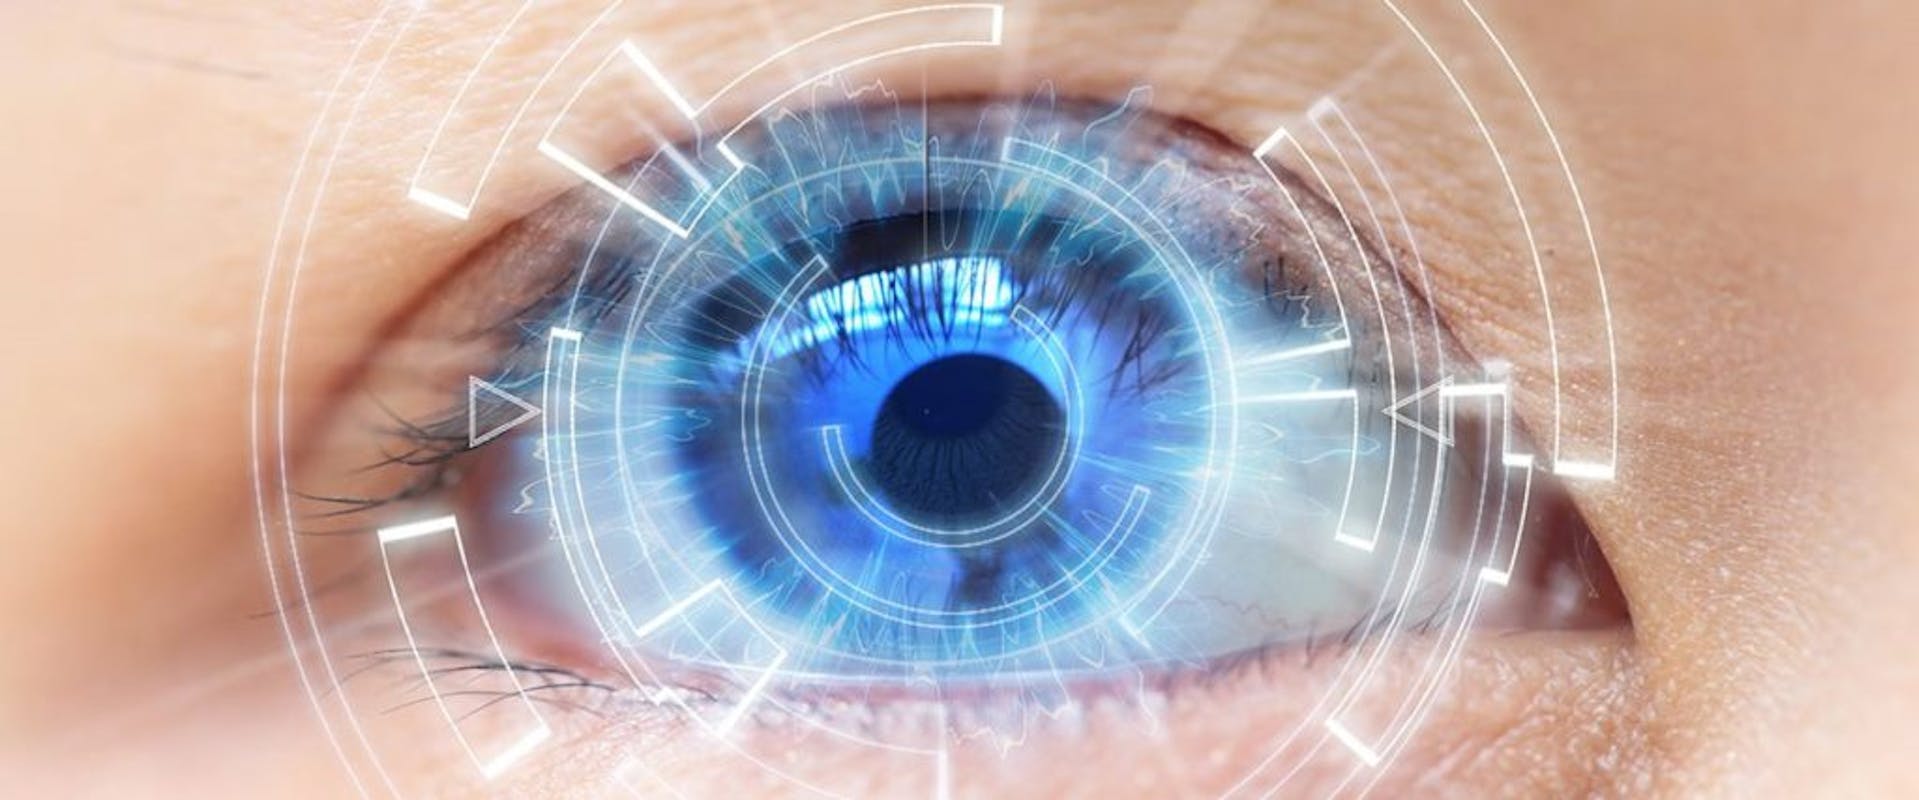 Оптическая в жизни человека. Бионические линзы для сверхчеловеческого зрения. Биотические контактные линзы. Здоровые глаза. Зрение.